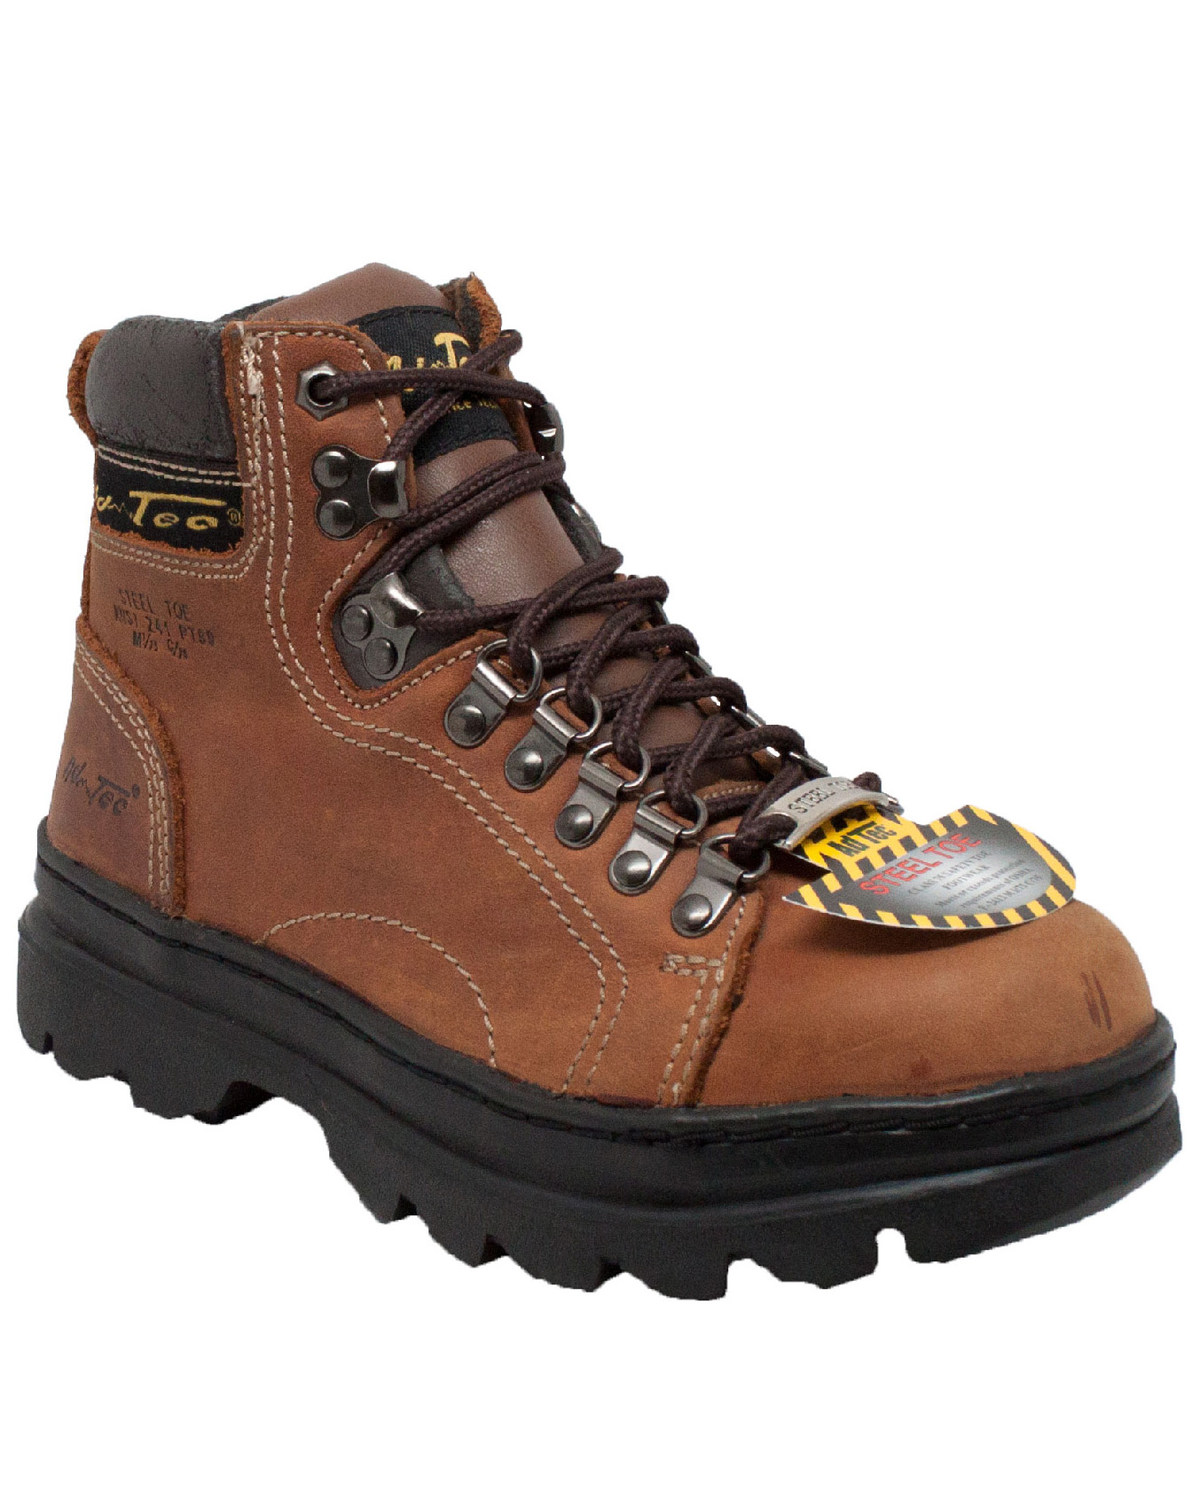 Ad Tec Women's Brown 6" Work Boots - Steel Toe